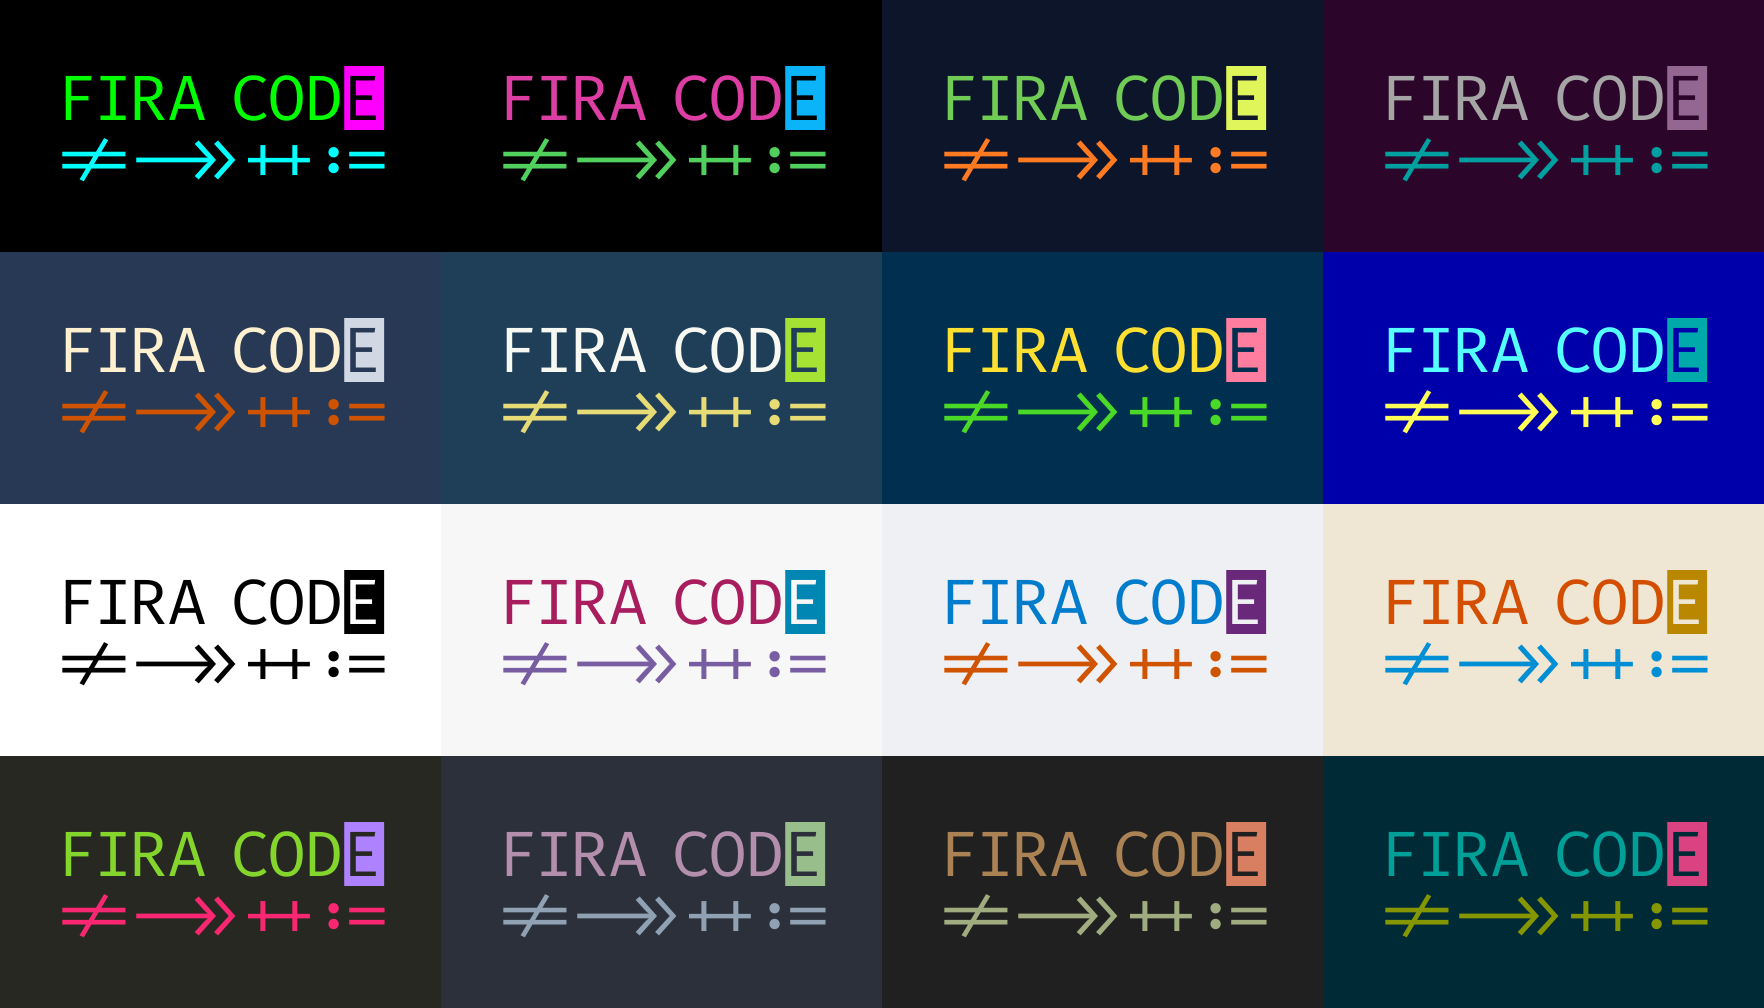 fira_code_logo.svg